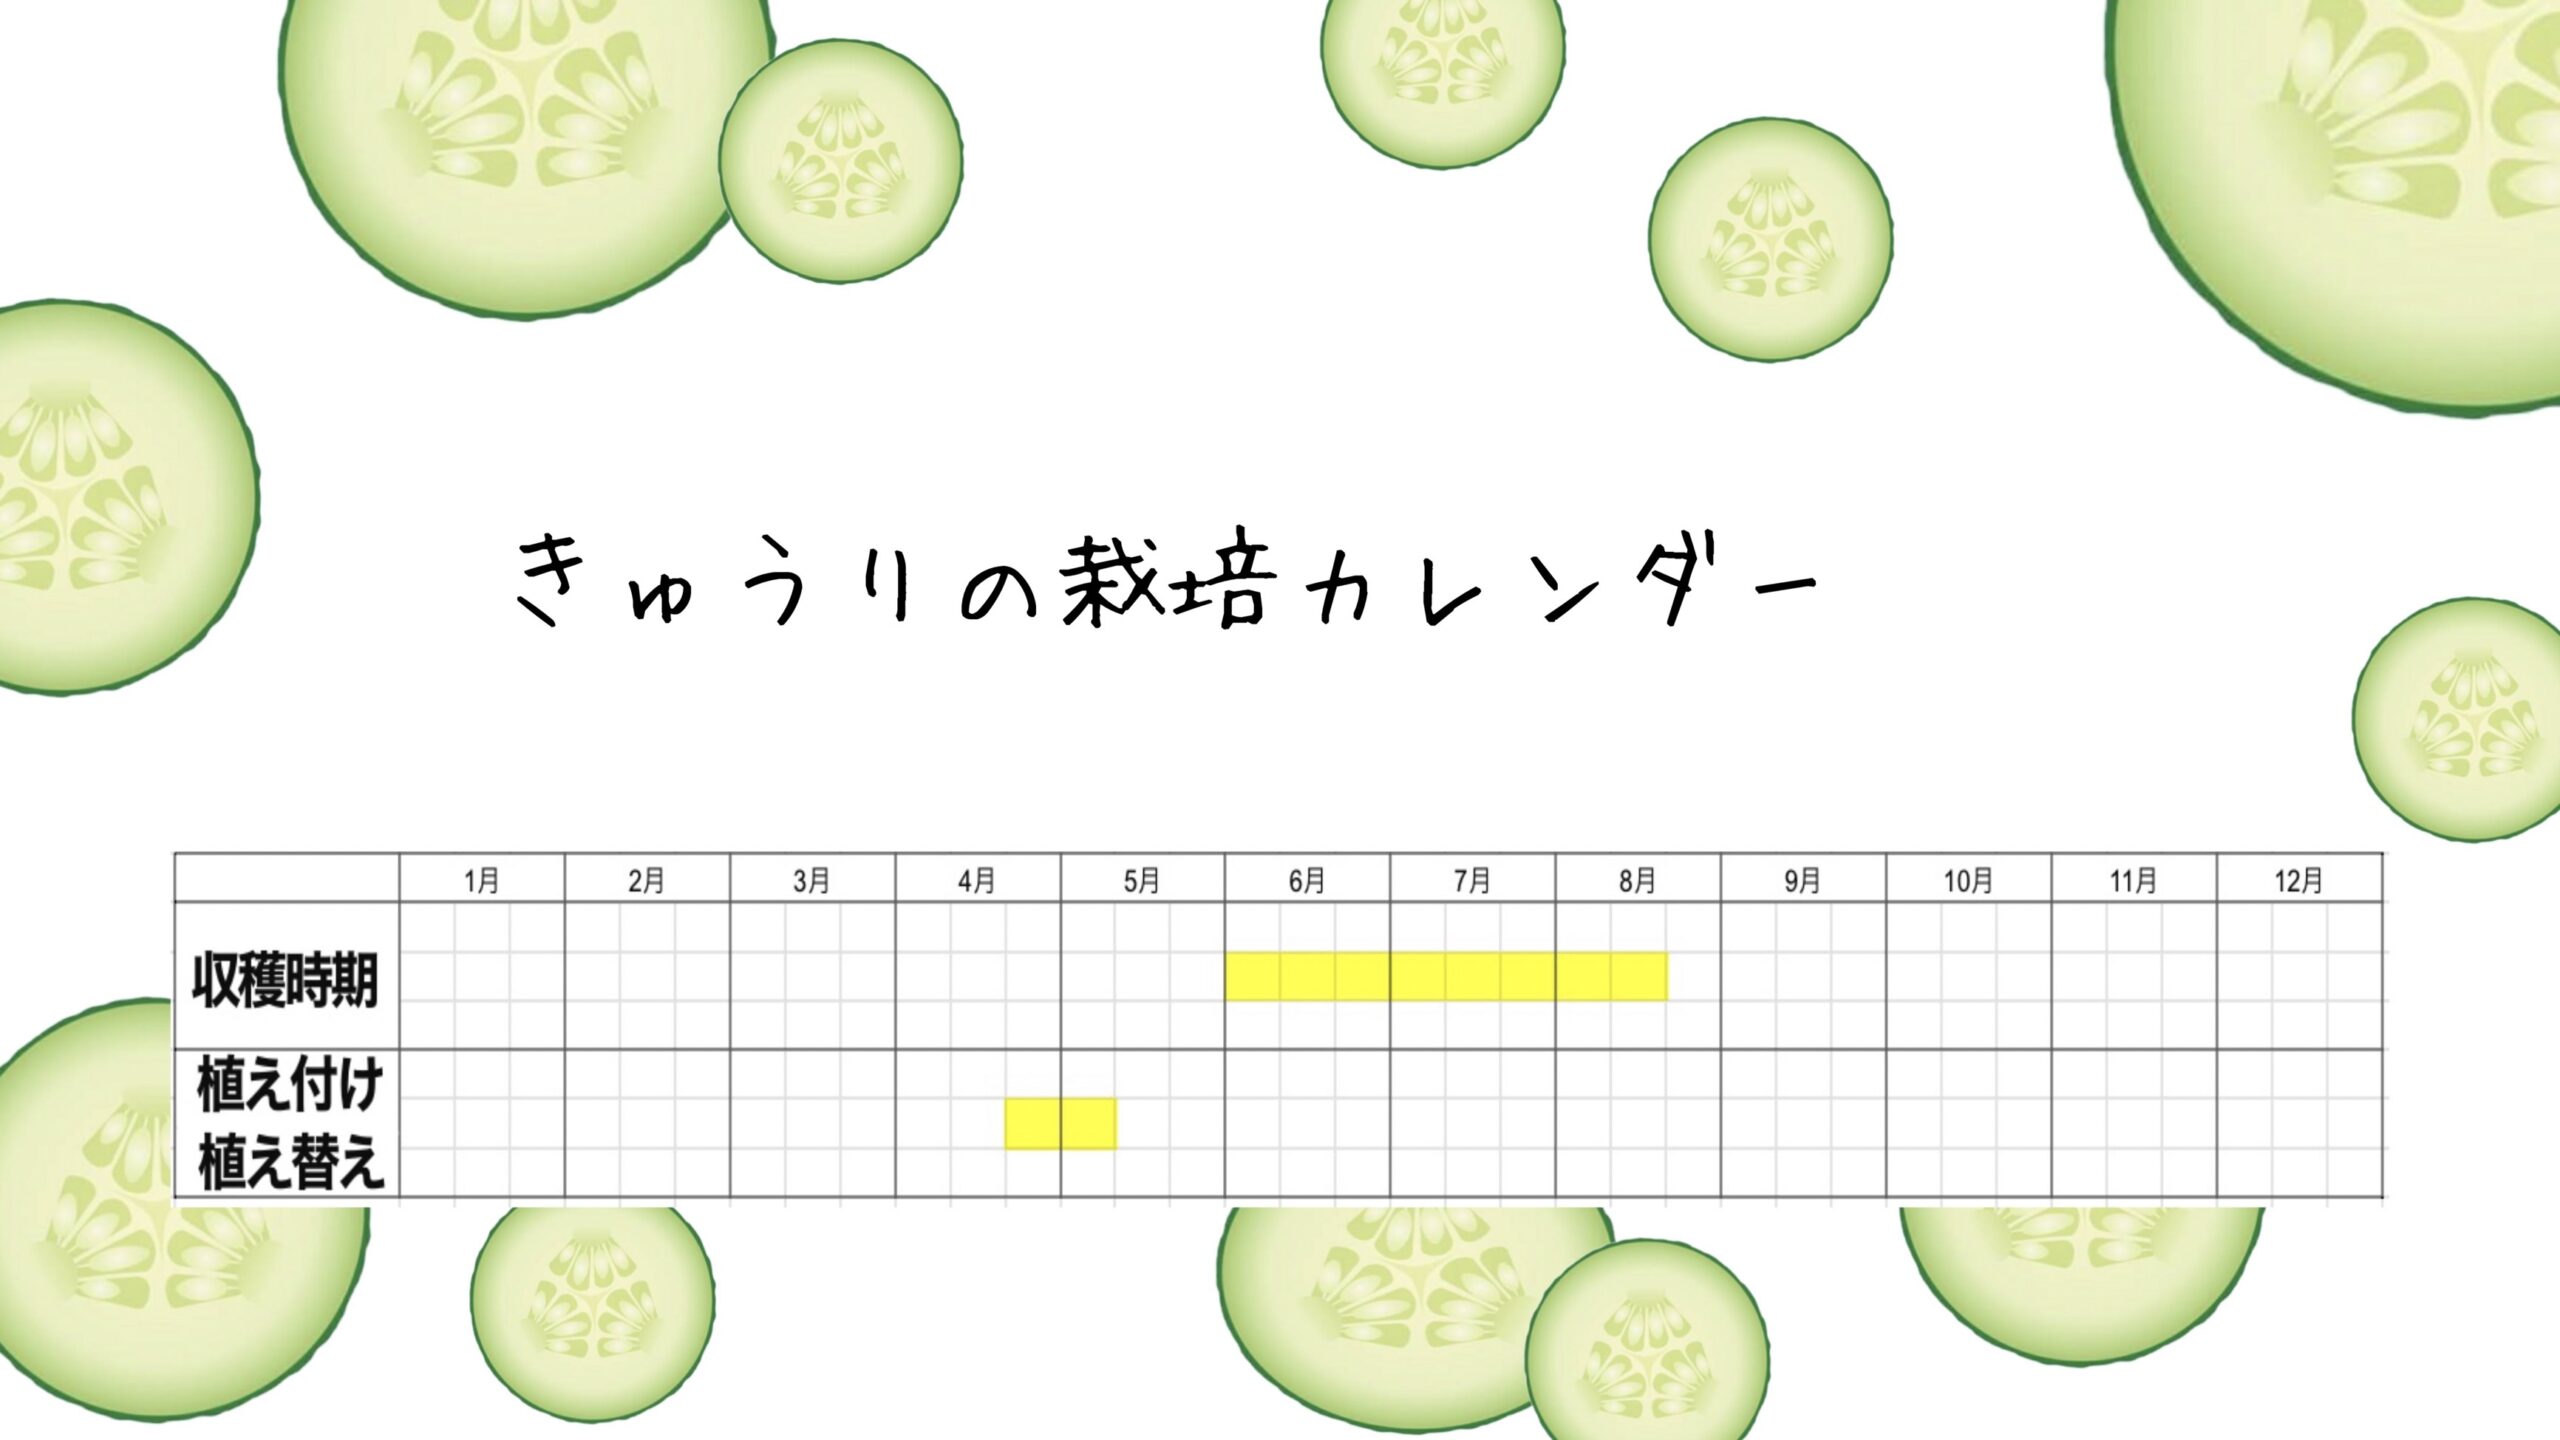 きゅうりの栽培カレンダー